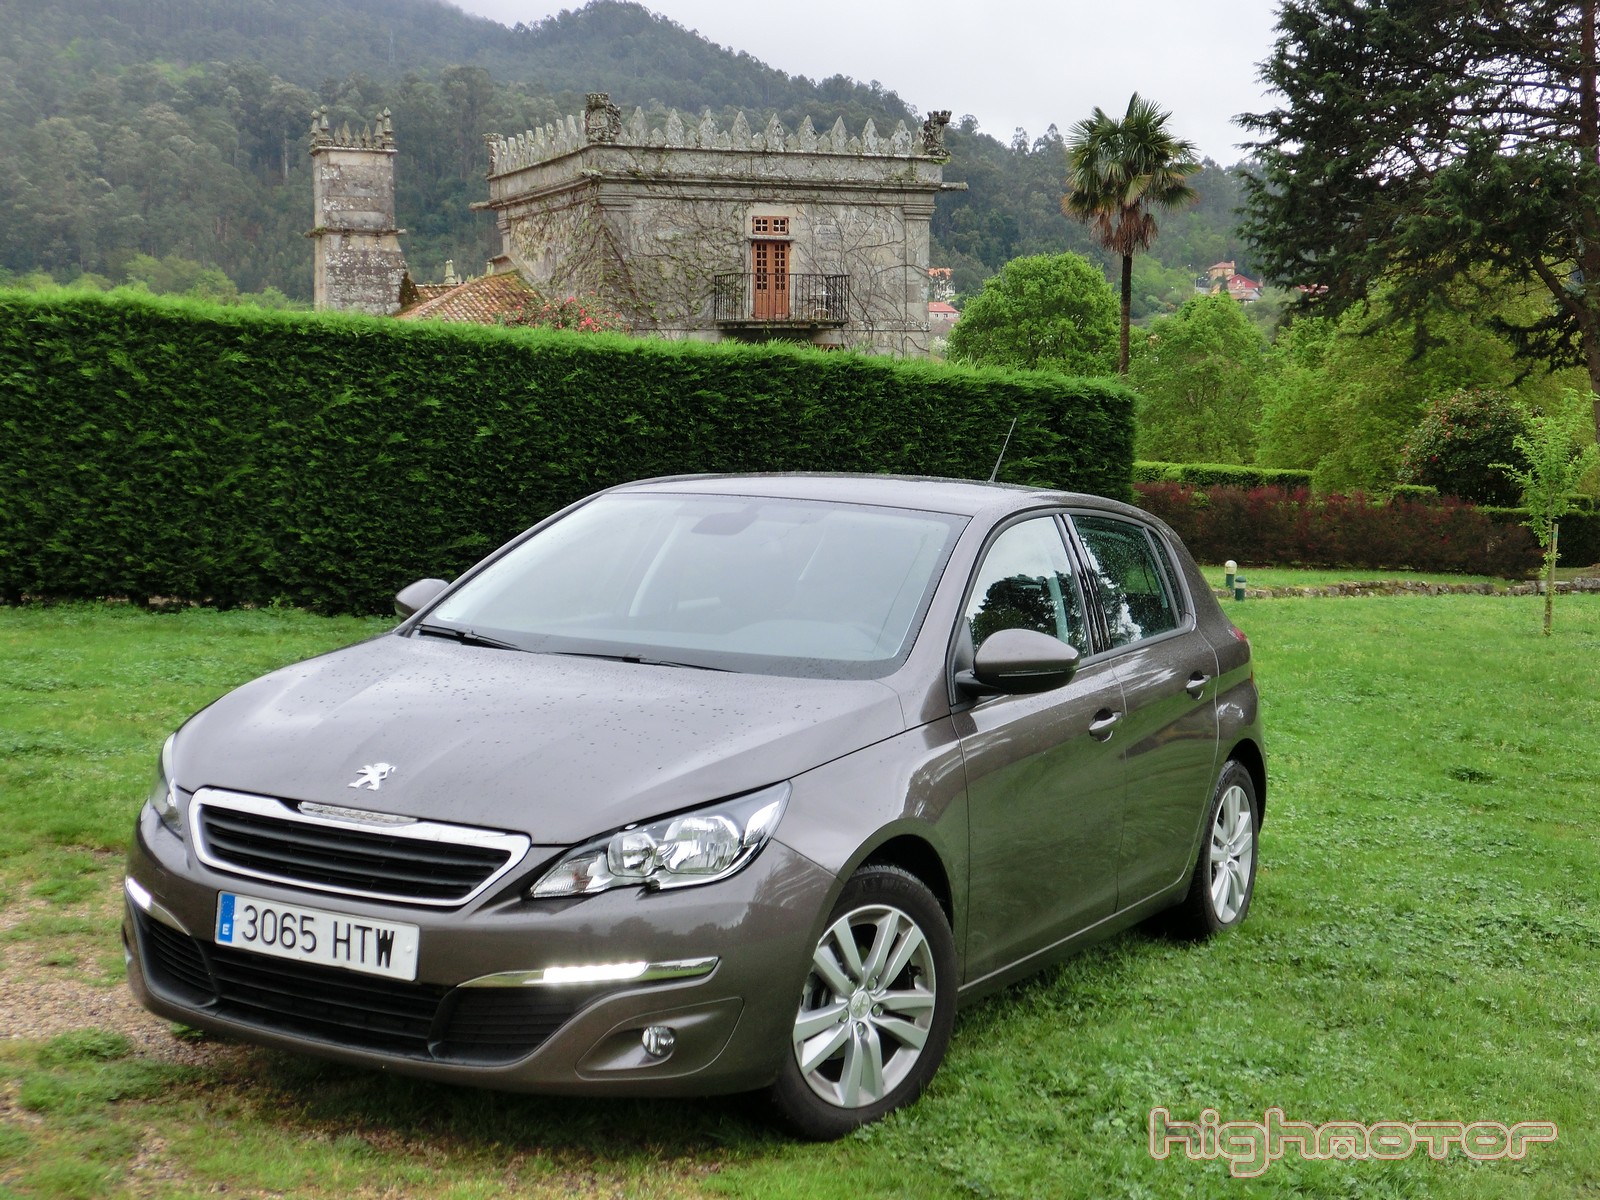 Peugeot 308 1.2 VTi 82 CV Active, prueba (Motor, prestaciones, comportamiento y consumo)